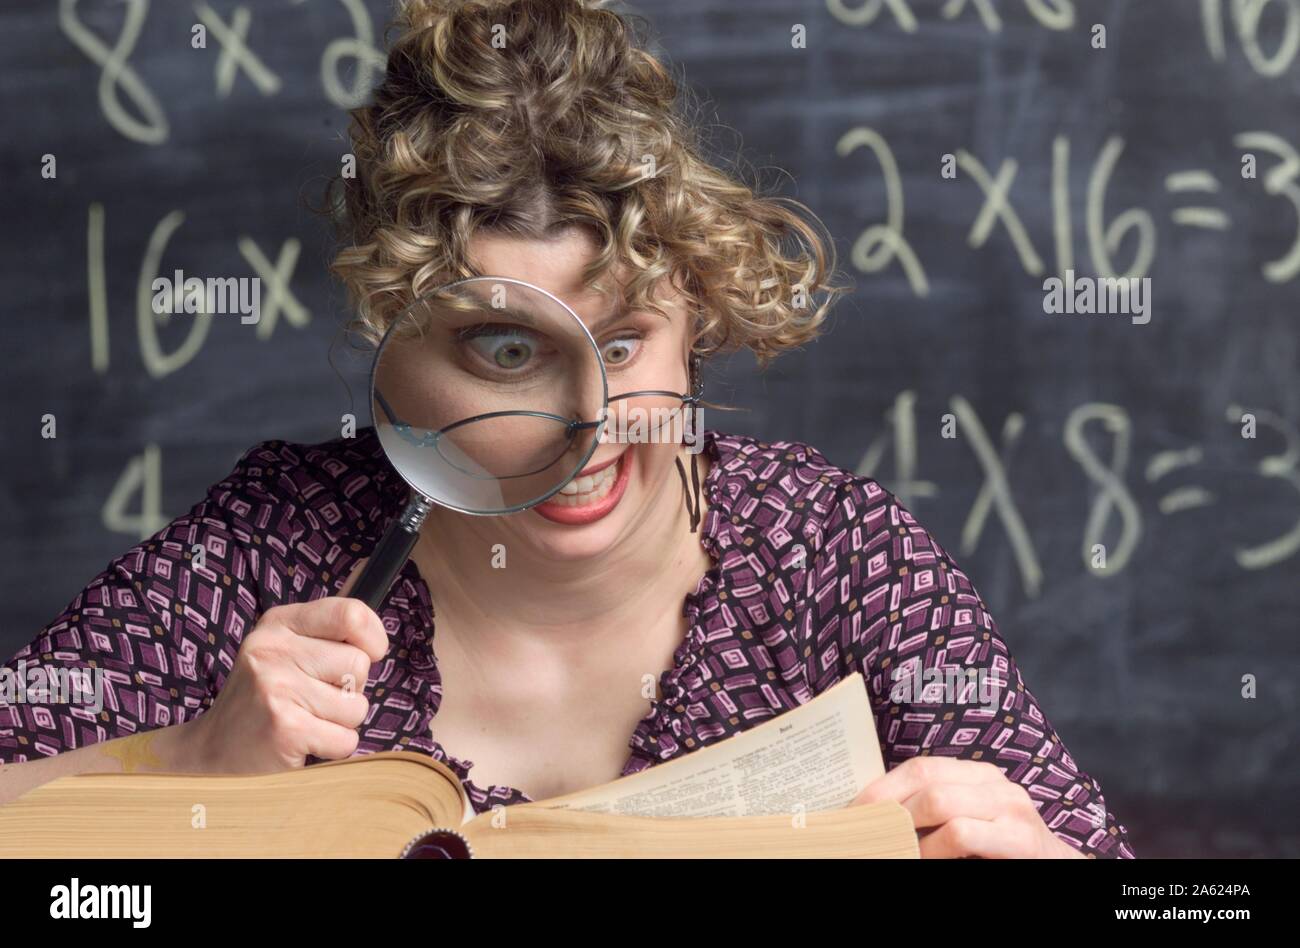 Photo humoristique d'un snoopy enseignant à l'aide d'une loupe pour regarder dans un dictionnaire Banque D'Images